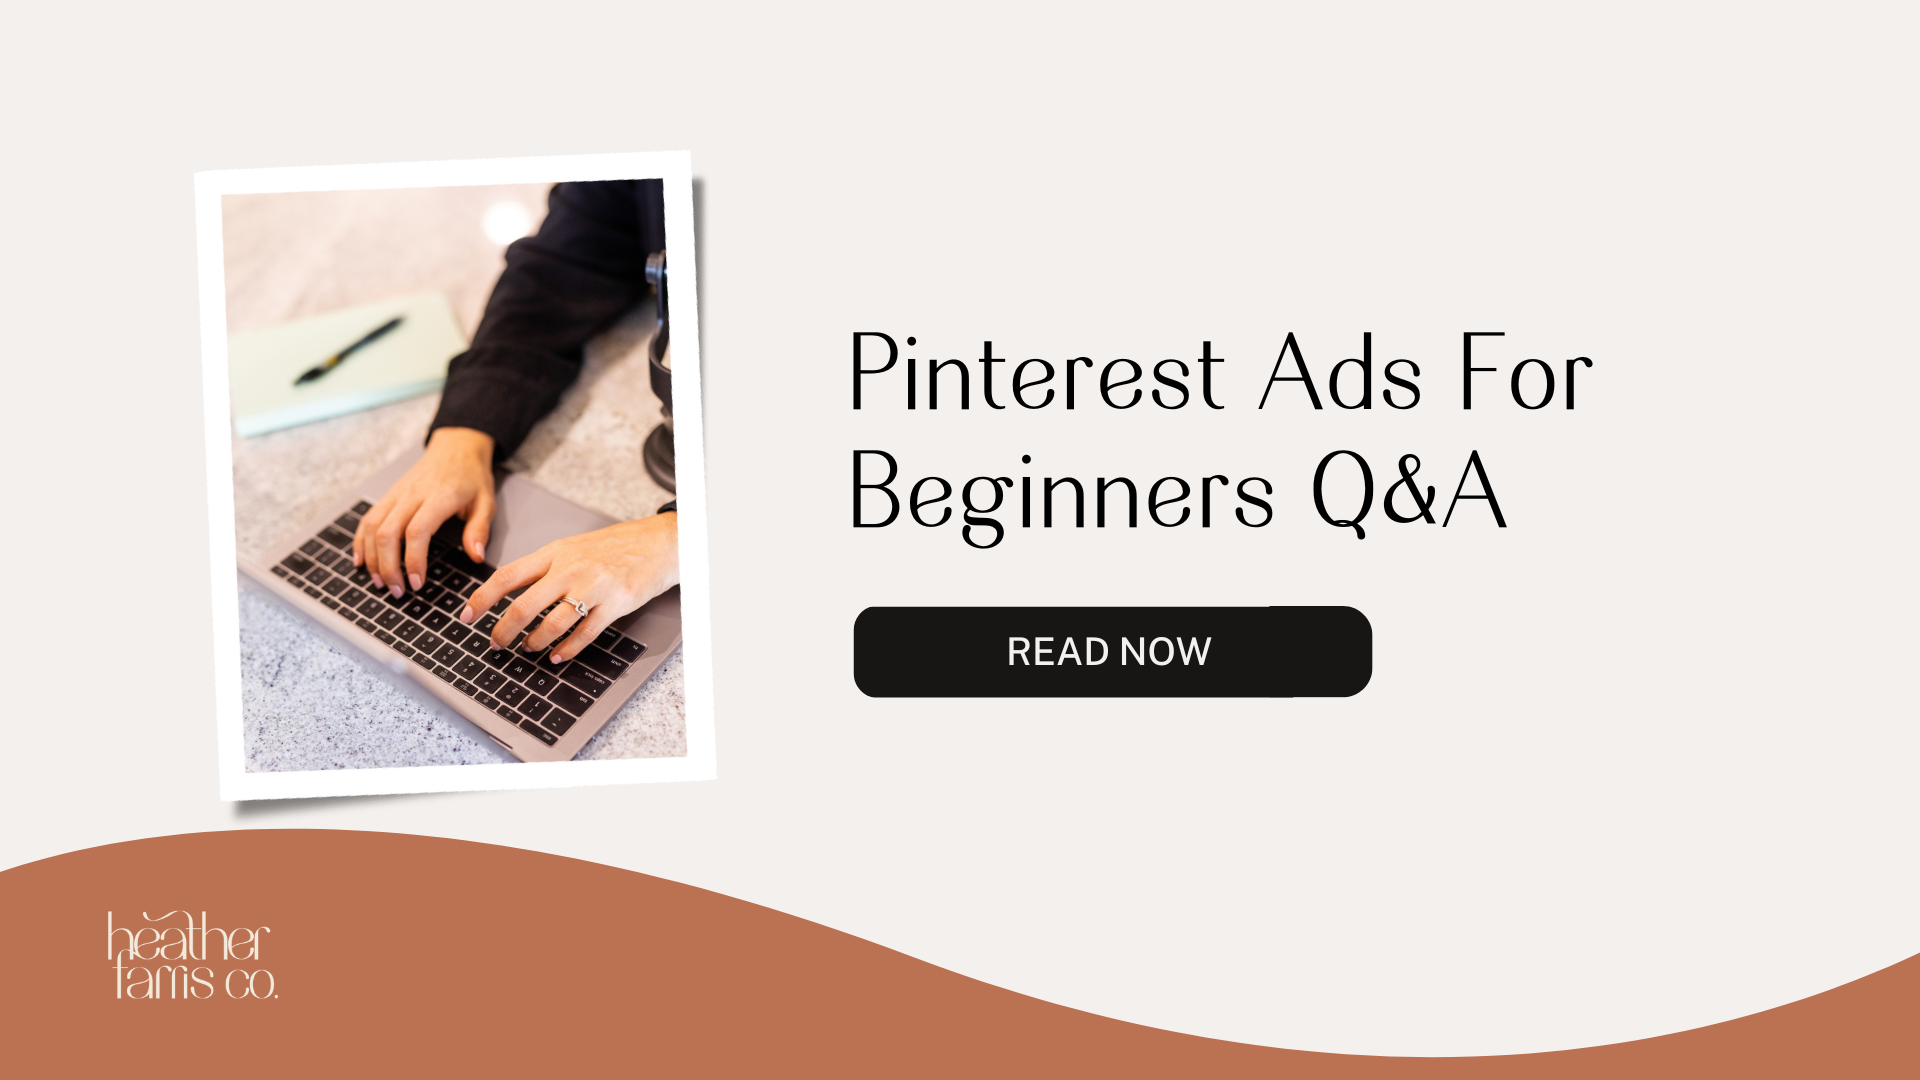 Pinterest Ads For Beginners Q&A